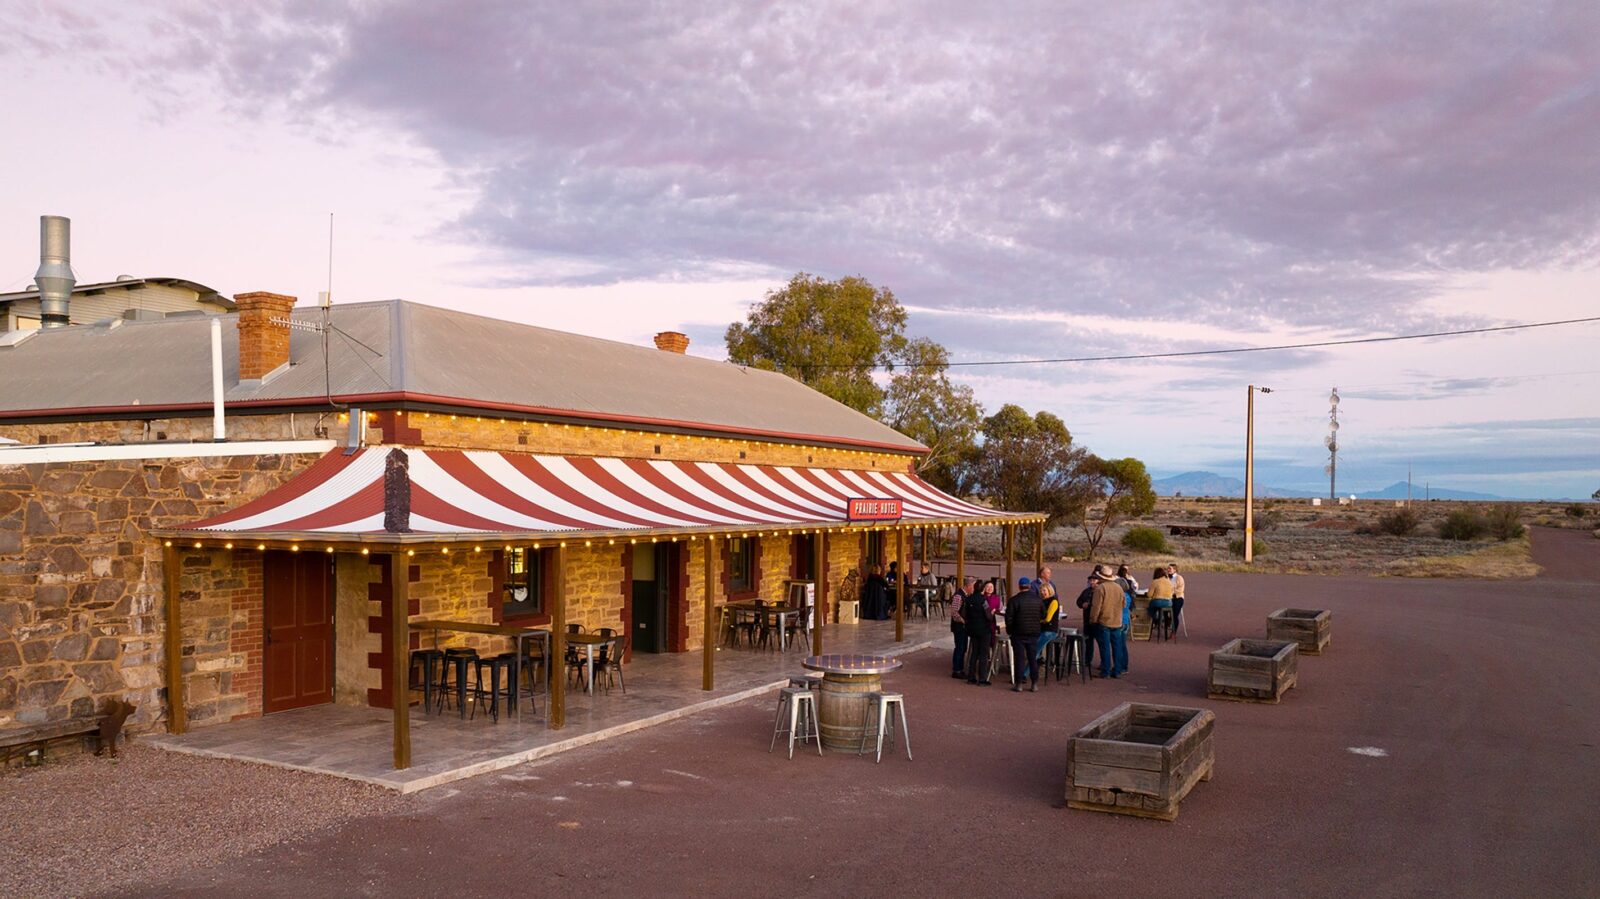 Prairie Hotel, Flinders Ranges, South Australia